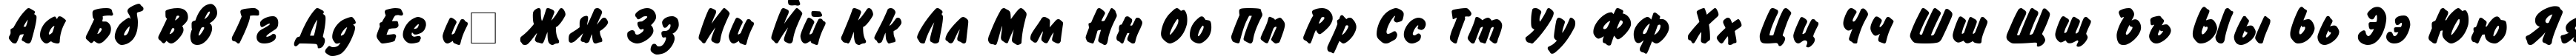 Пример написания русского алфавита шрифтом Flash Bold